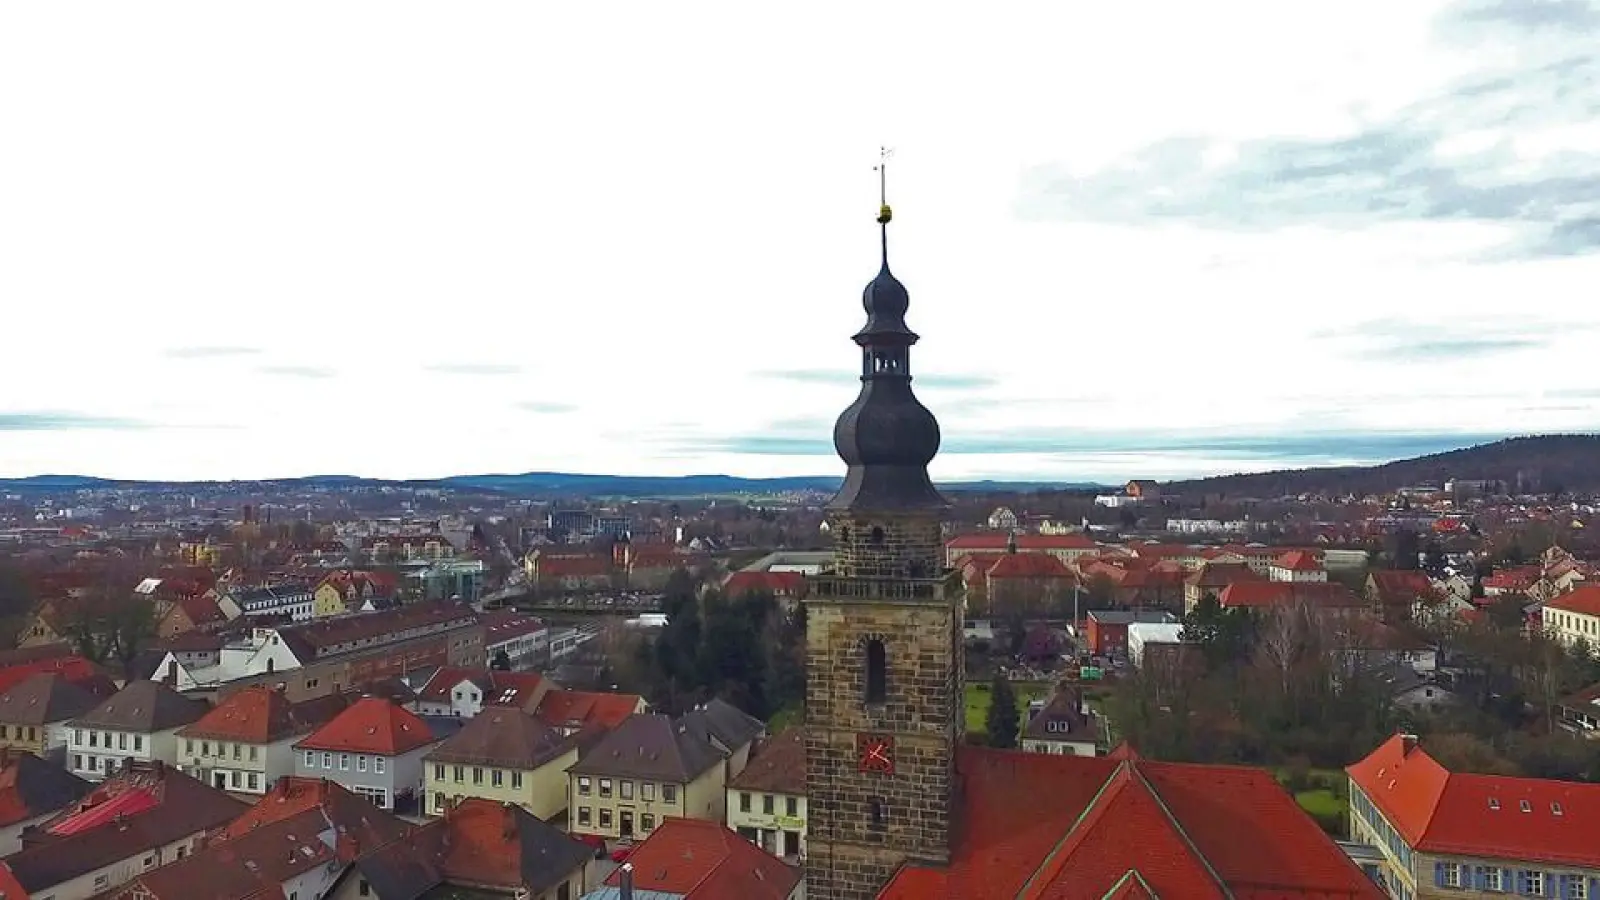 Veranstaltung in Bayreuth: Choral erklingt vom Kirchturm (Foto: Thomas Wild)